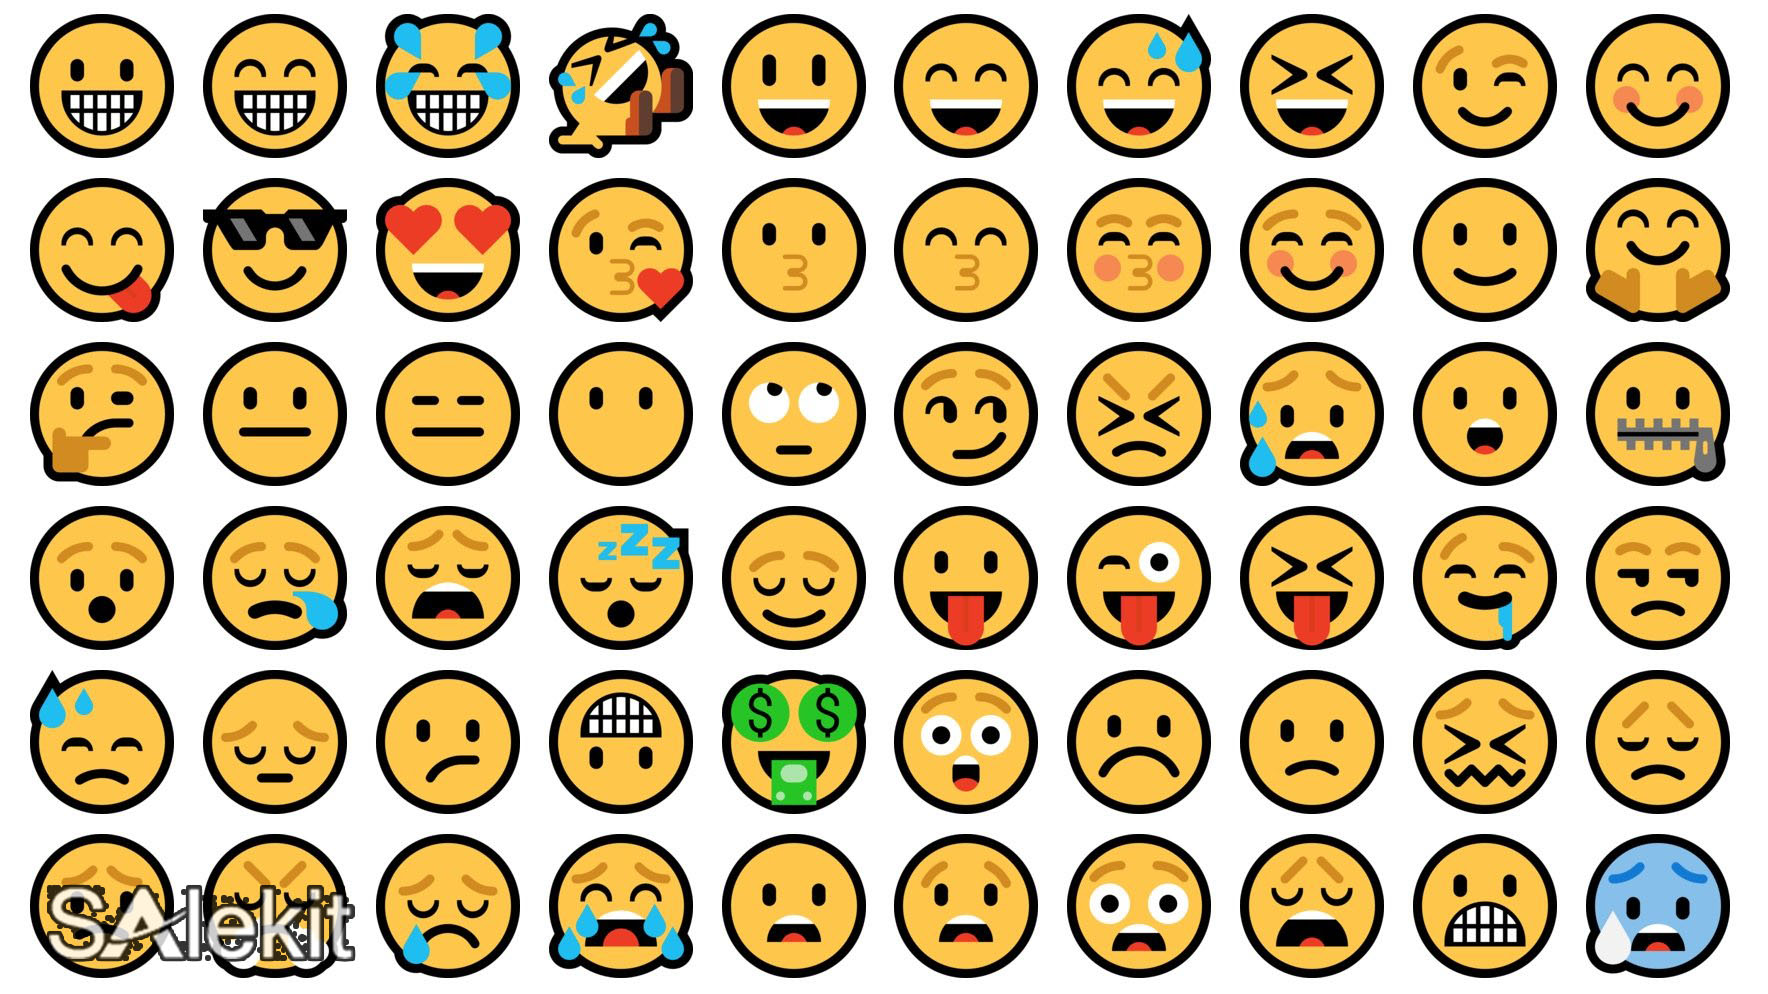 Hướng dẫn sử dụng biểu tượng cảm xúc trên status facebook hiệu quả